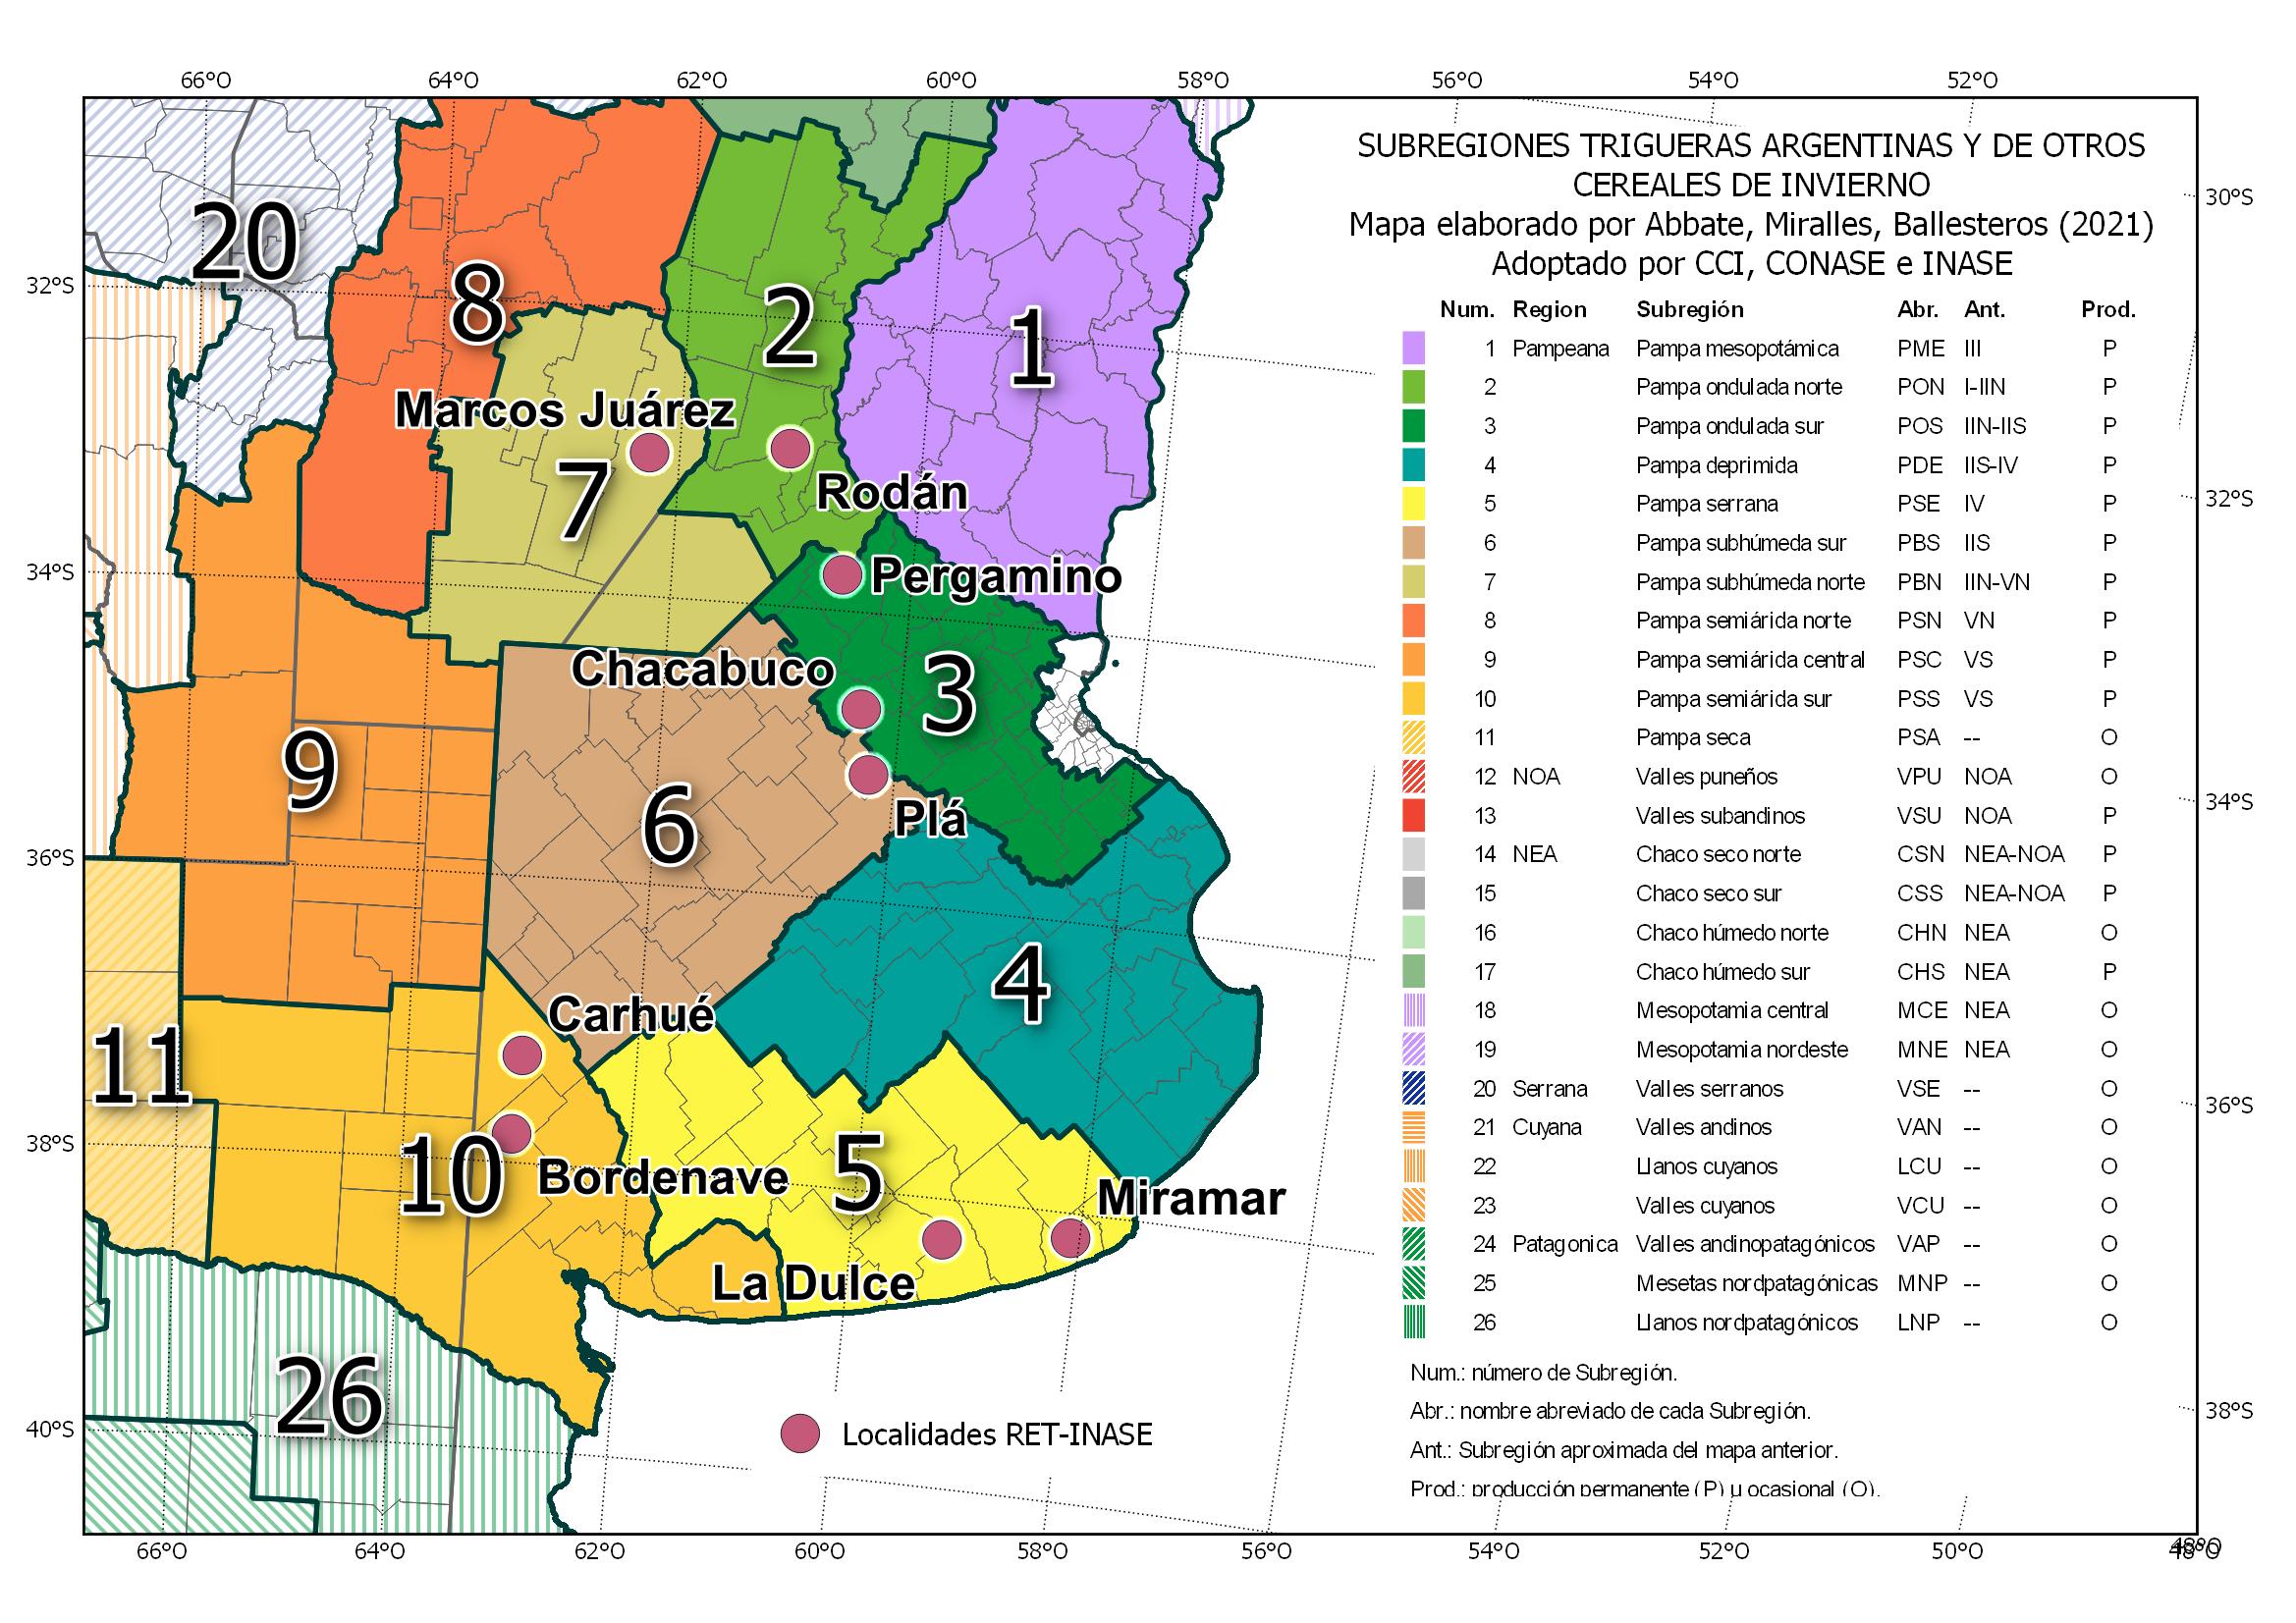 Mapa de las Subregiones trigueras argentinas 2021